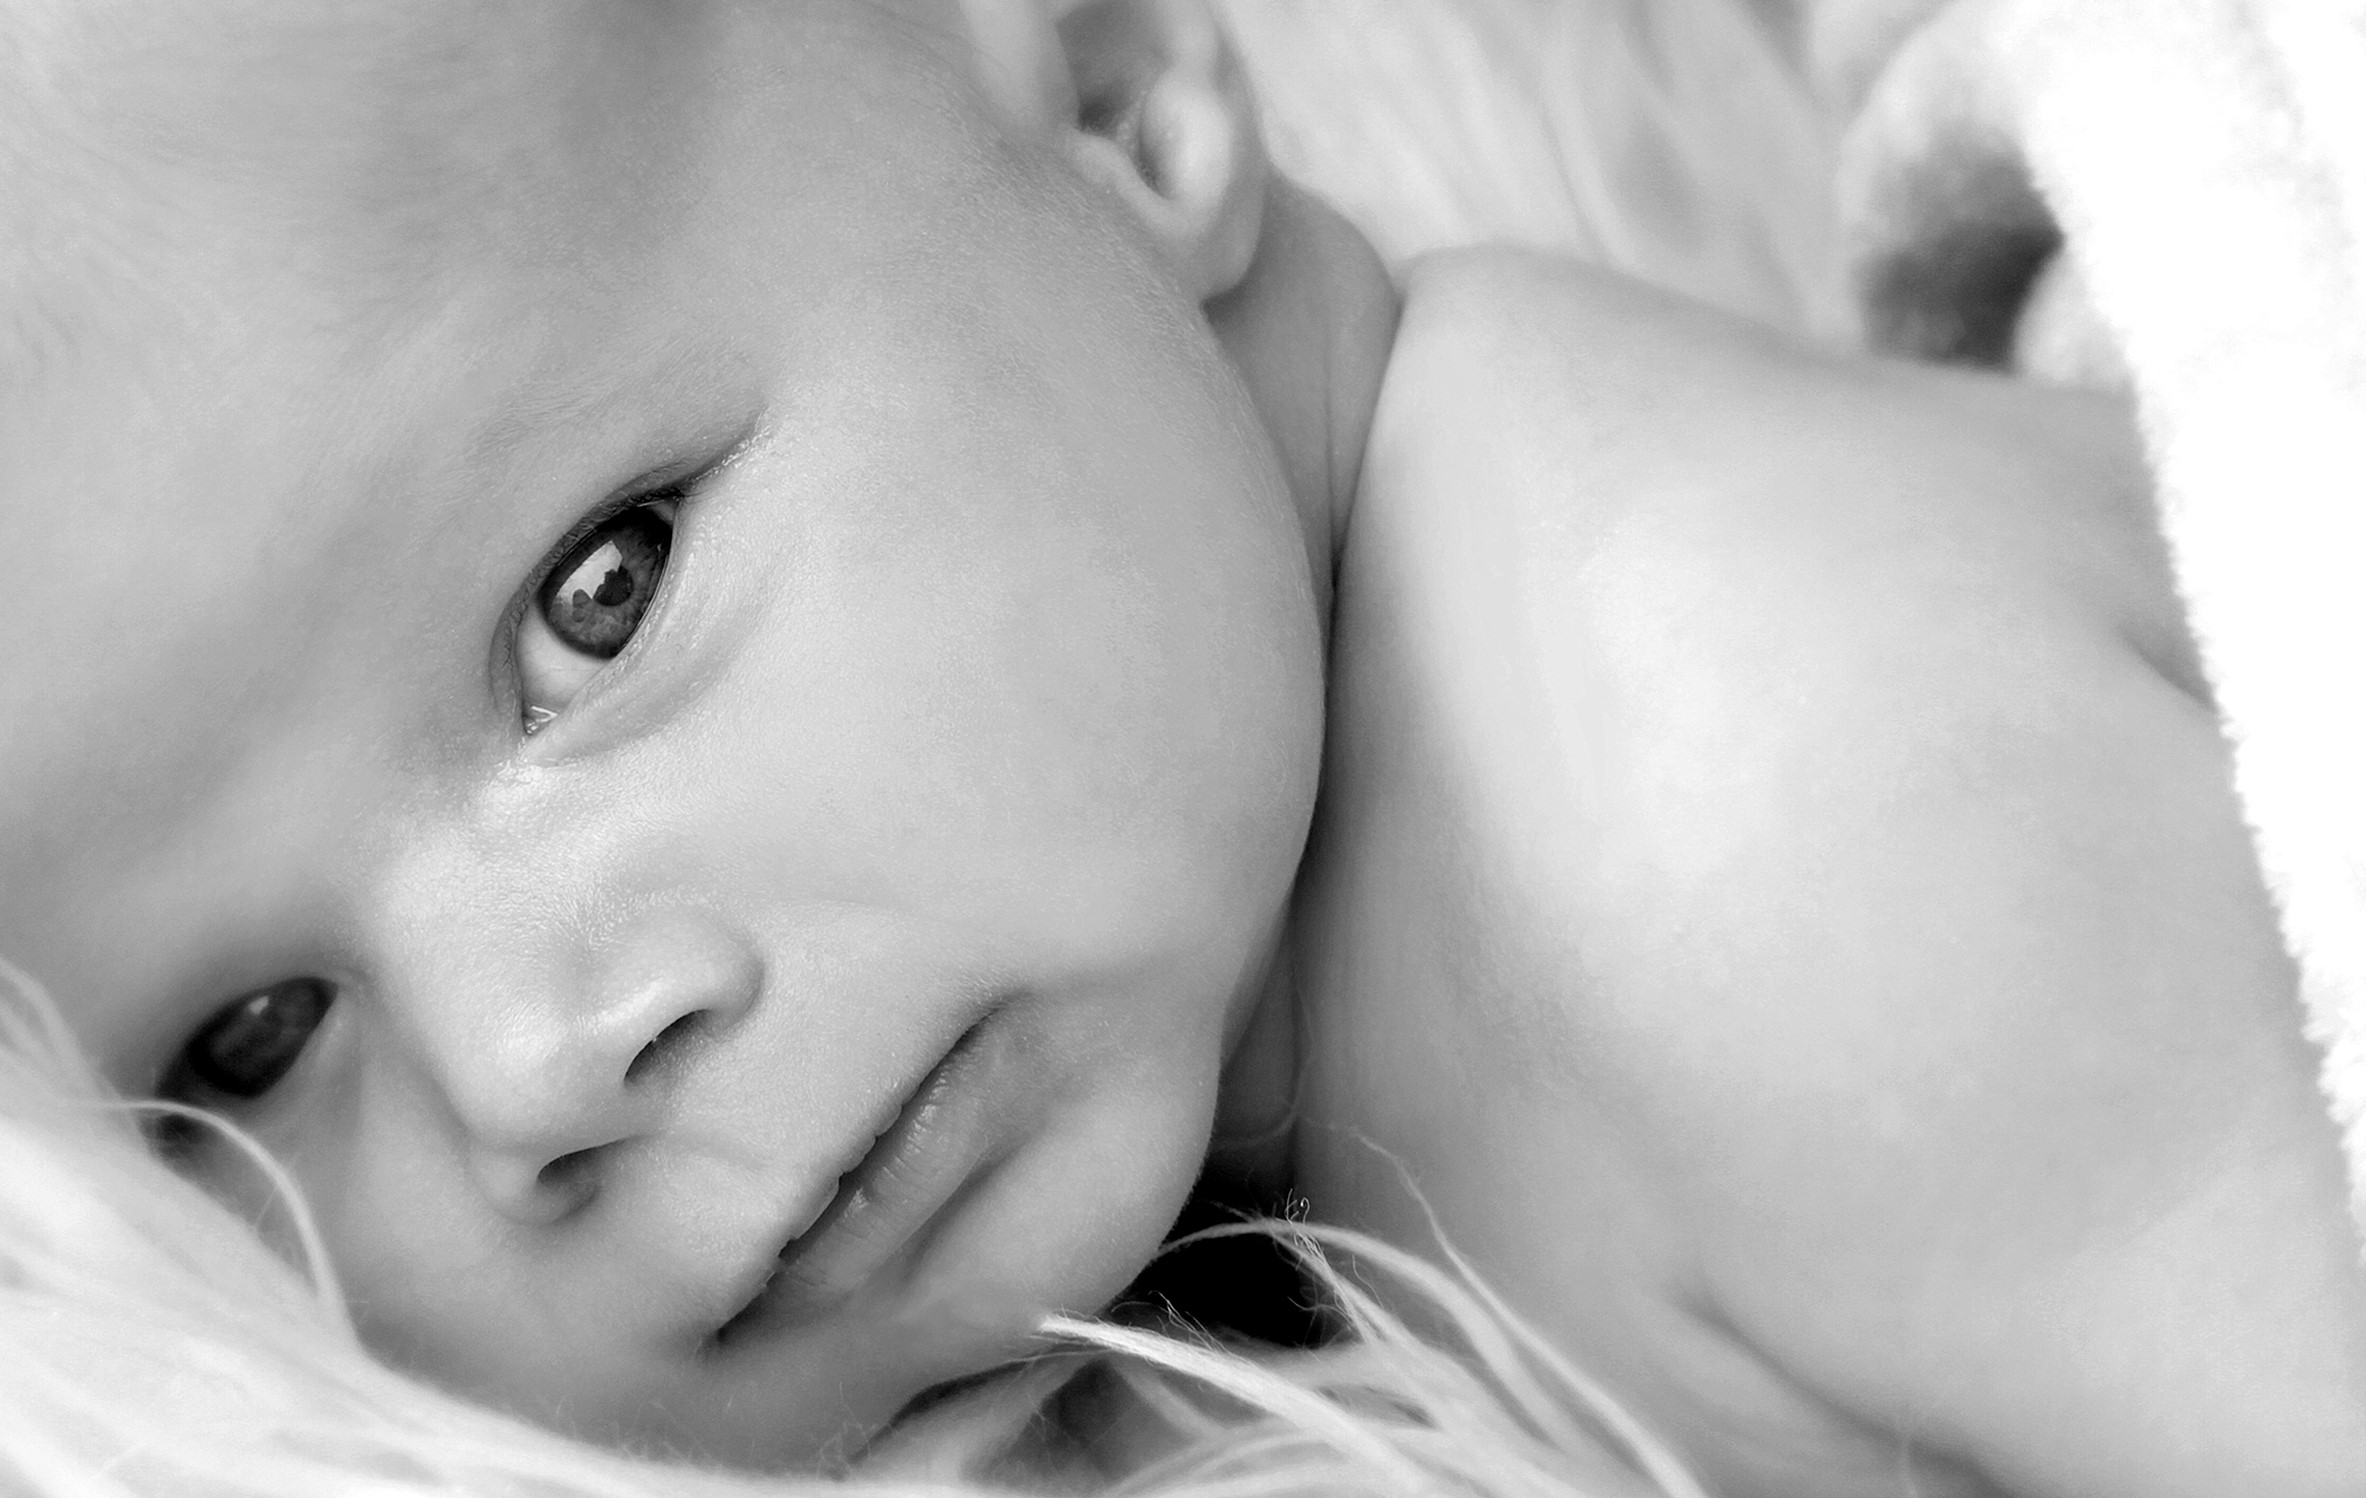 Baby Gesichtsausschnitt in schwarz weiss